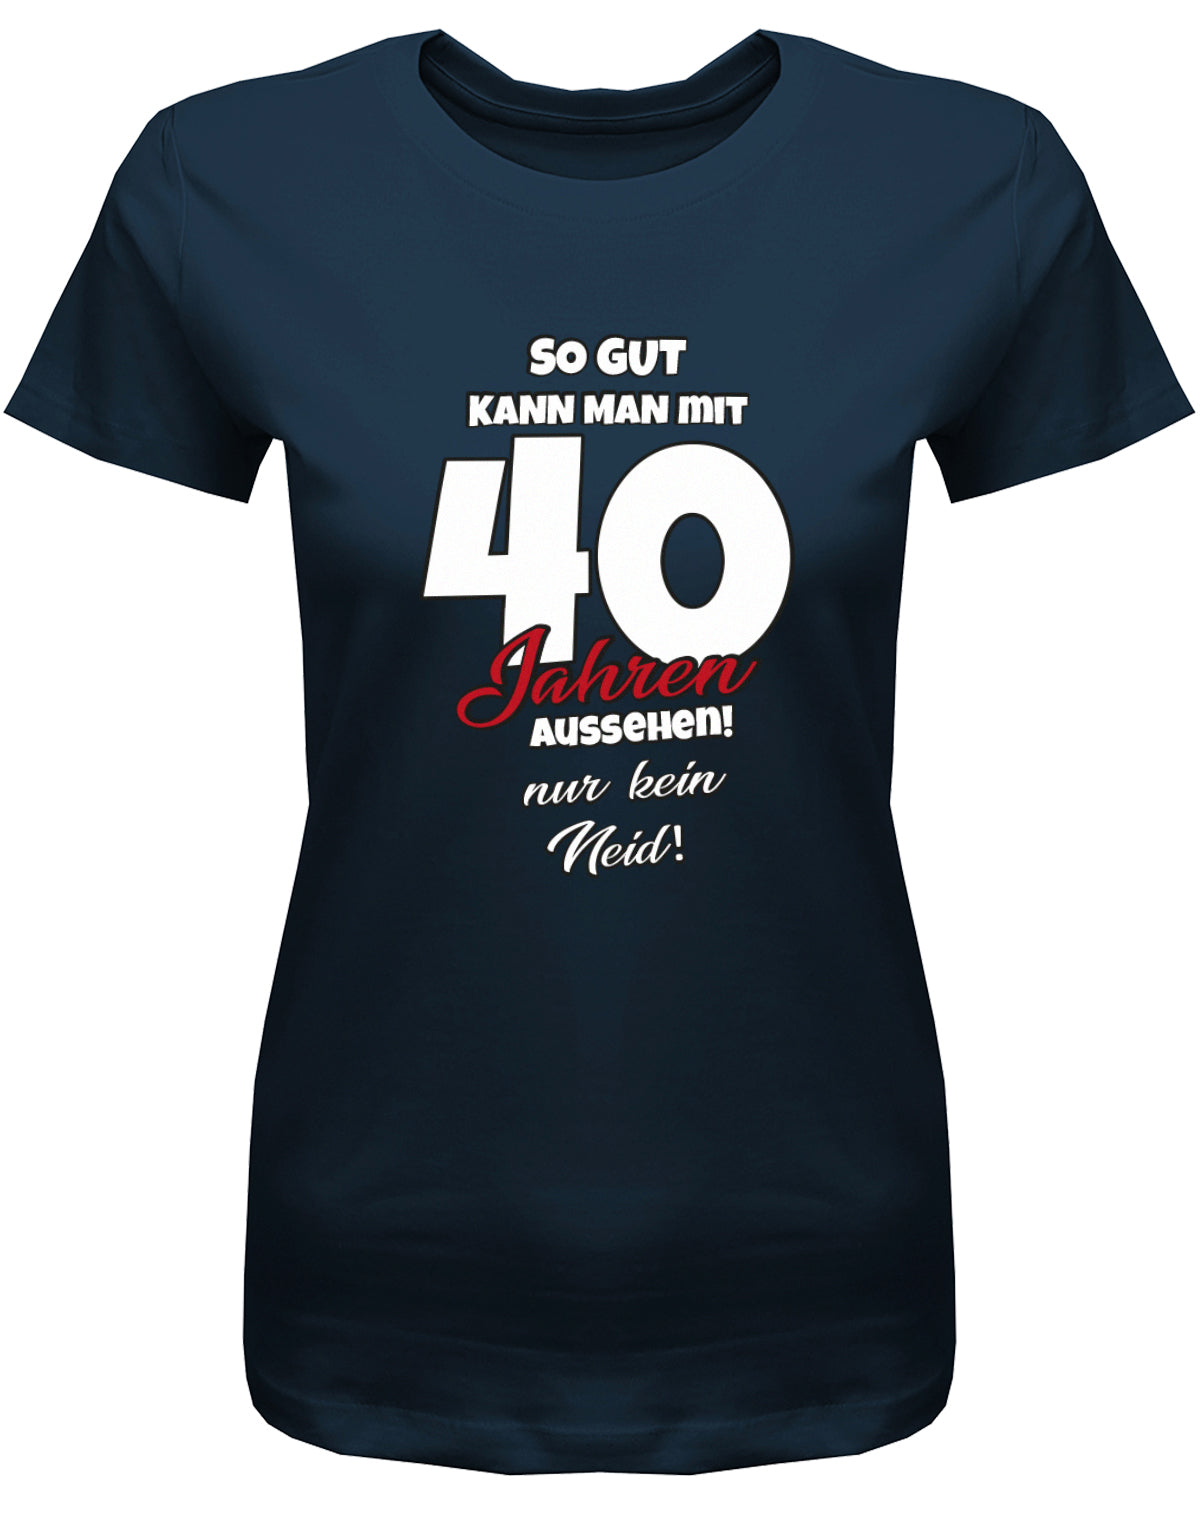 Lustiges T-Shirt zum 40 Geburtstag für die Frau Bedruckt mit So gut kann man mit 40 Jahren aussehen! Nur kein Neid! Navy